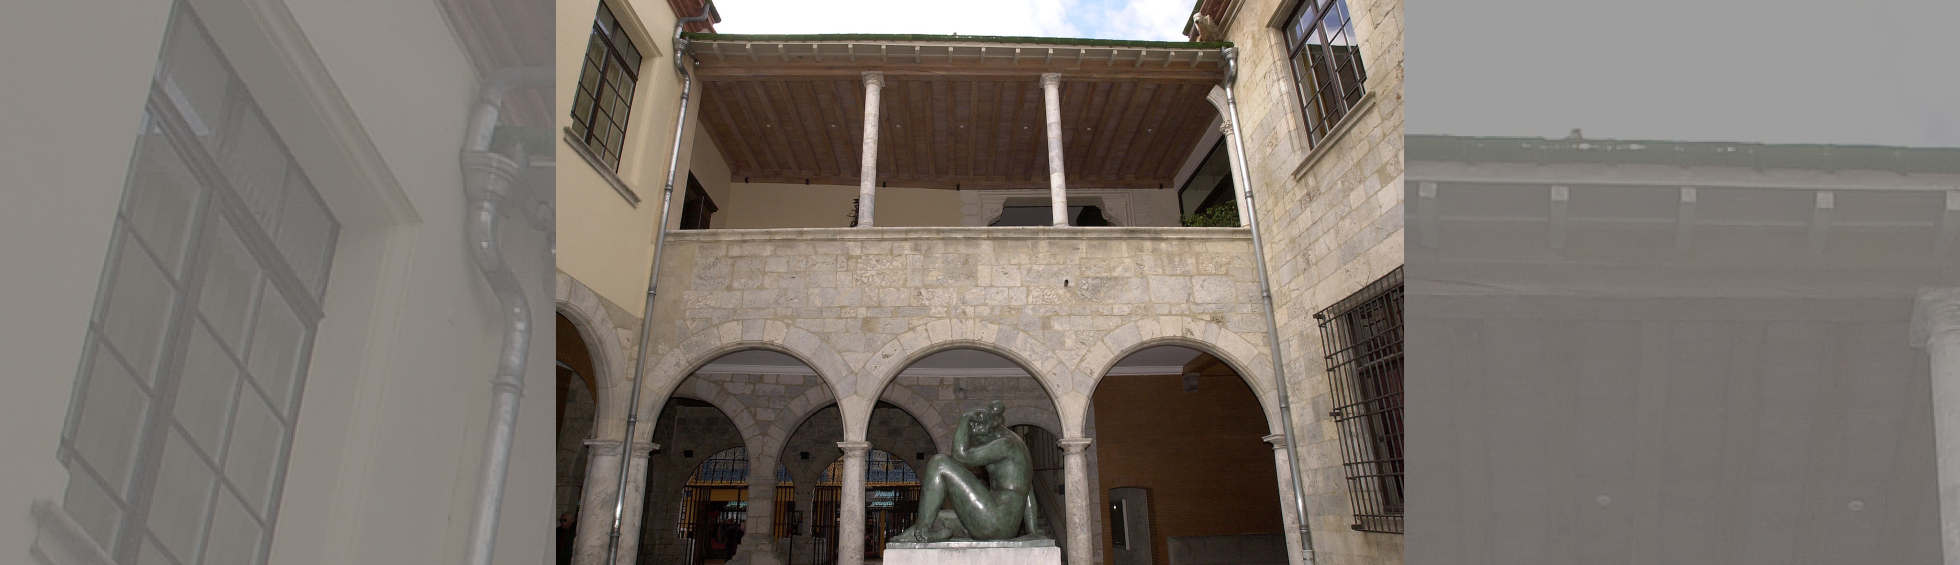 Hôtel de Ville : Façade après ouverture de la loggia : poutre de toit sur 2 colonnes et vestiges d'une naissance d'arc à droite